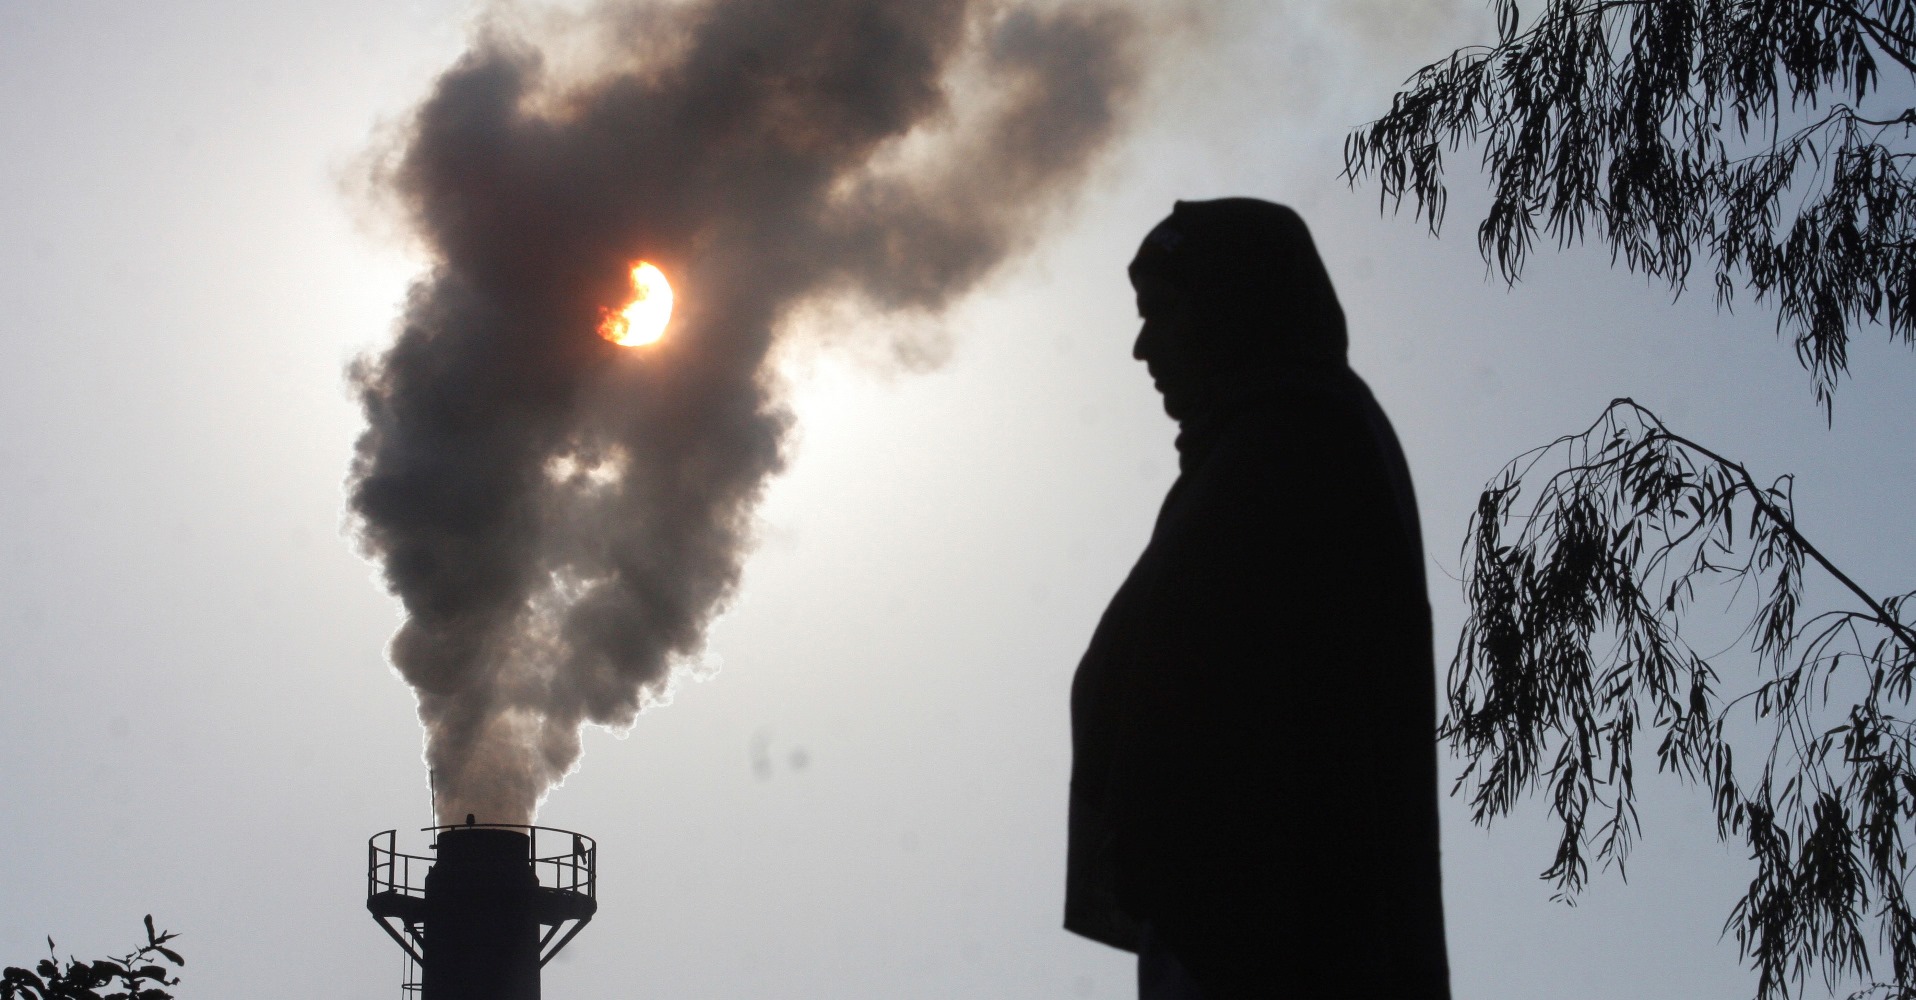 मानव स्वास्थ्य के लिए है वायु प्रदूषण सबसे बड़े पर्यावरण ख़तरों में एक: डब्ल्यूएचओ